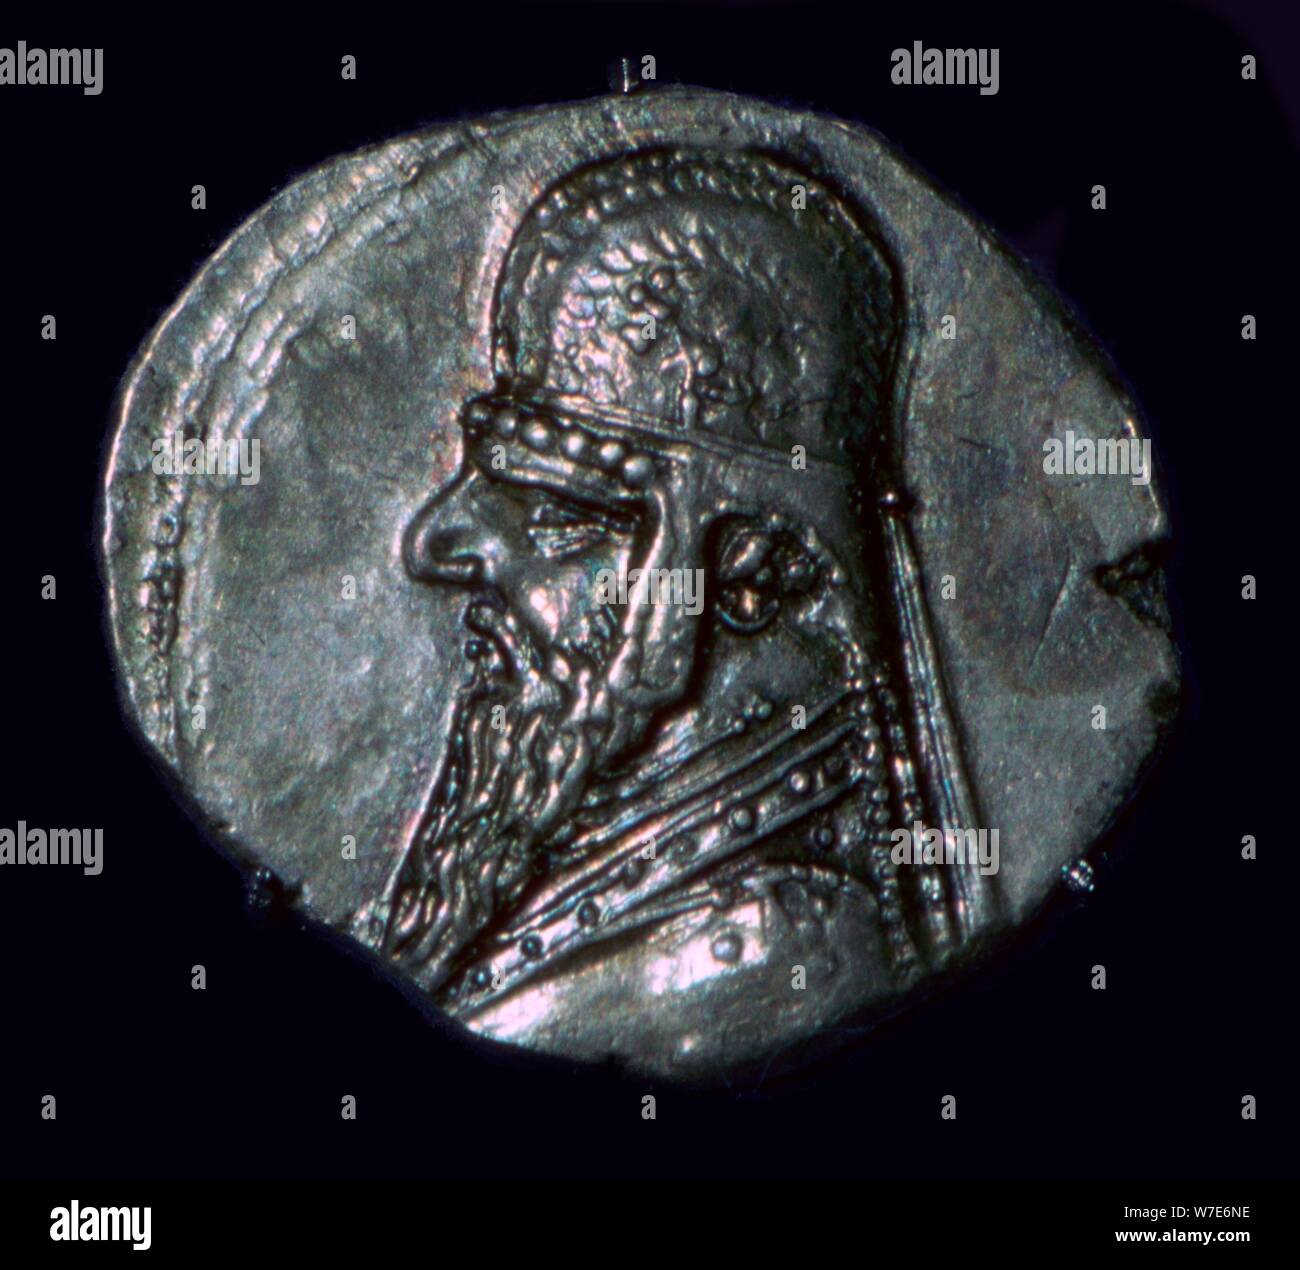 Drachma of King Mithridates II of Parthia, c1st century BC. Artist: Unknown Stock Photo